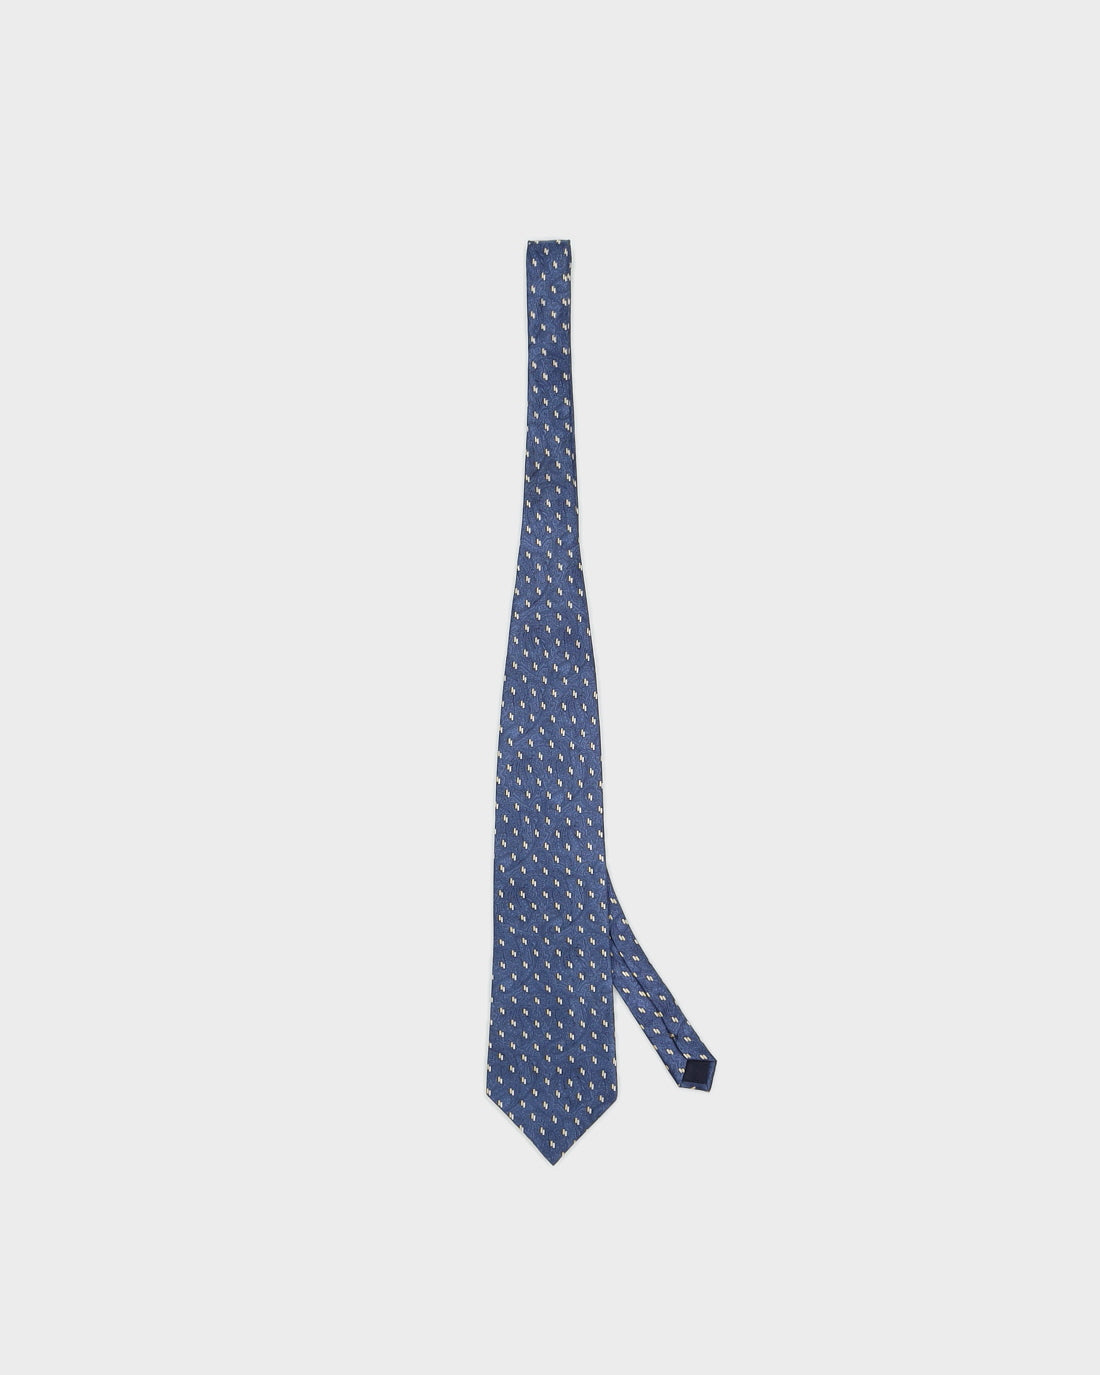 Giorgio Armani Blue Patterned Tie